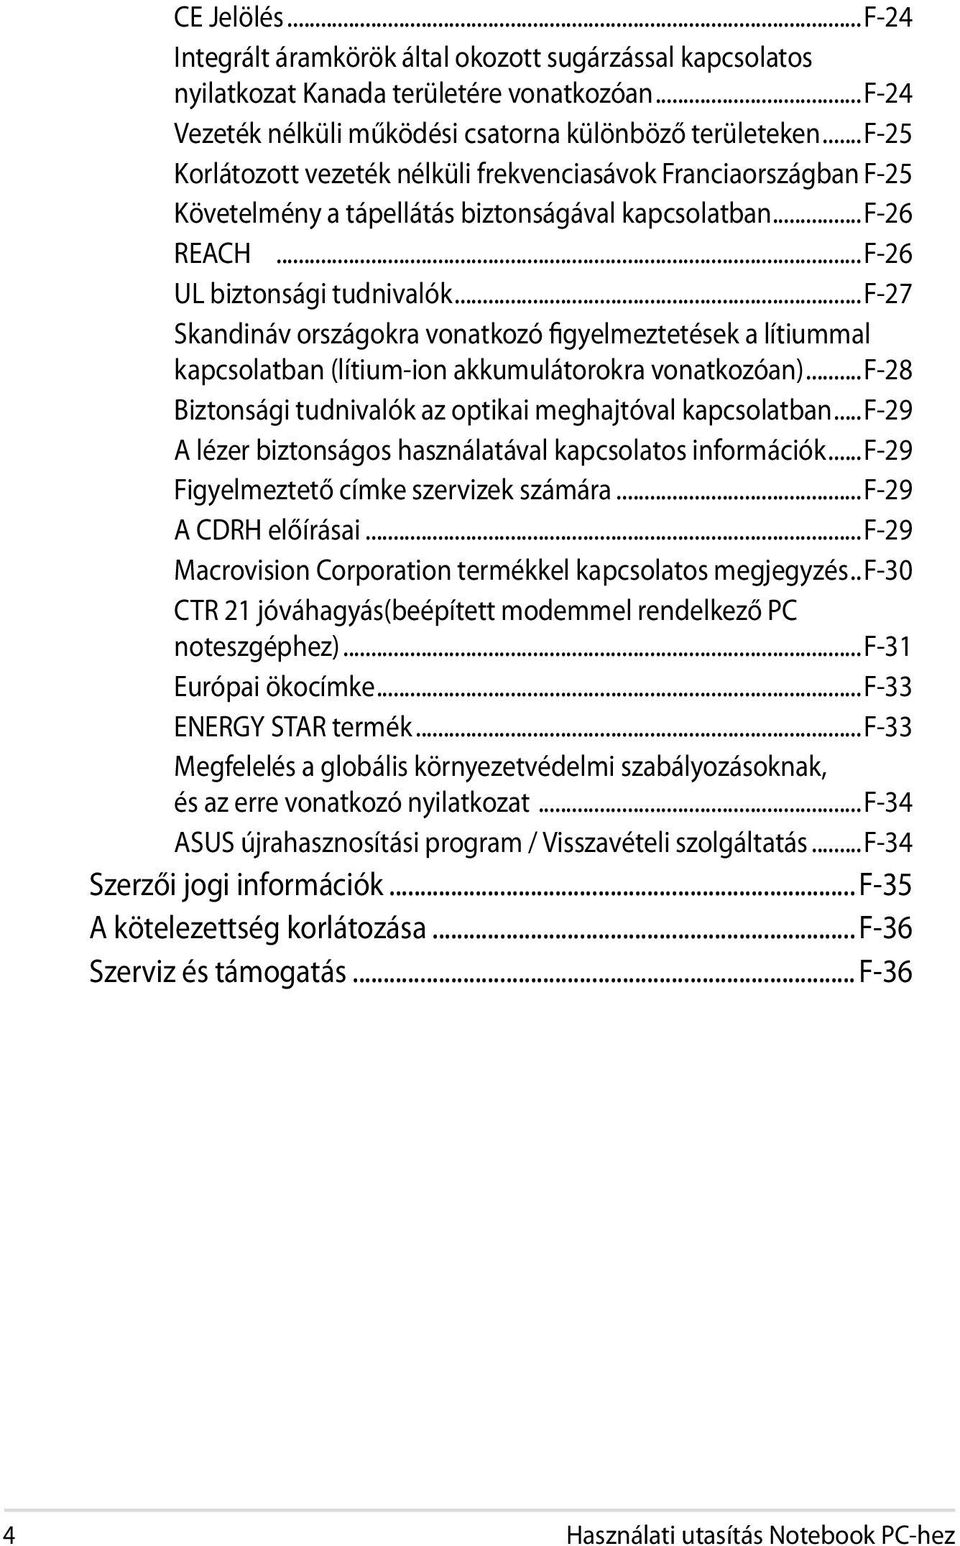 ..f-27 Skandináv országokra vonatkozó figyelmeztetések a lítiummal kapcsolatban (lítium-ion akkumulátorokra vonatkozóan)...f-28 Biztonsági tudnivalók az optikai meghajtóval kapcsolatban.